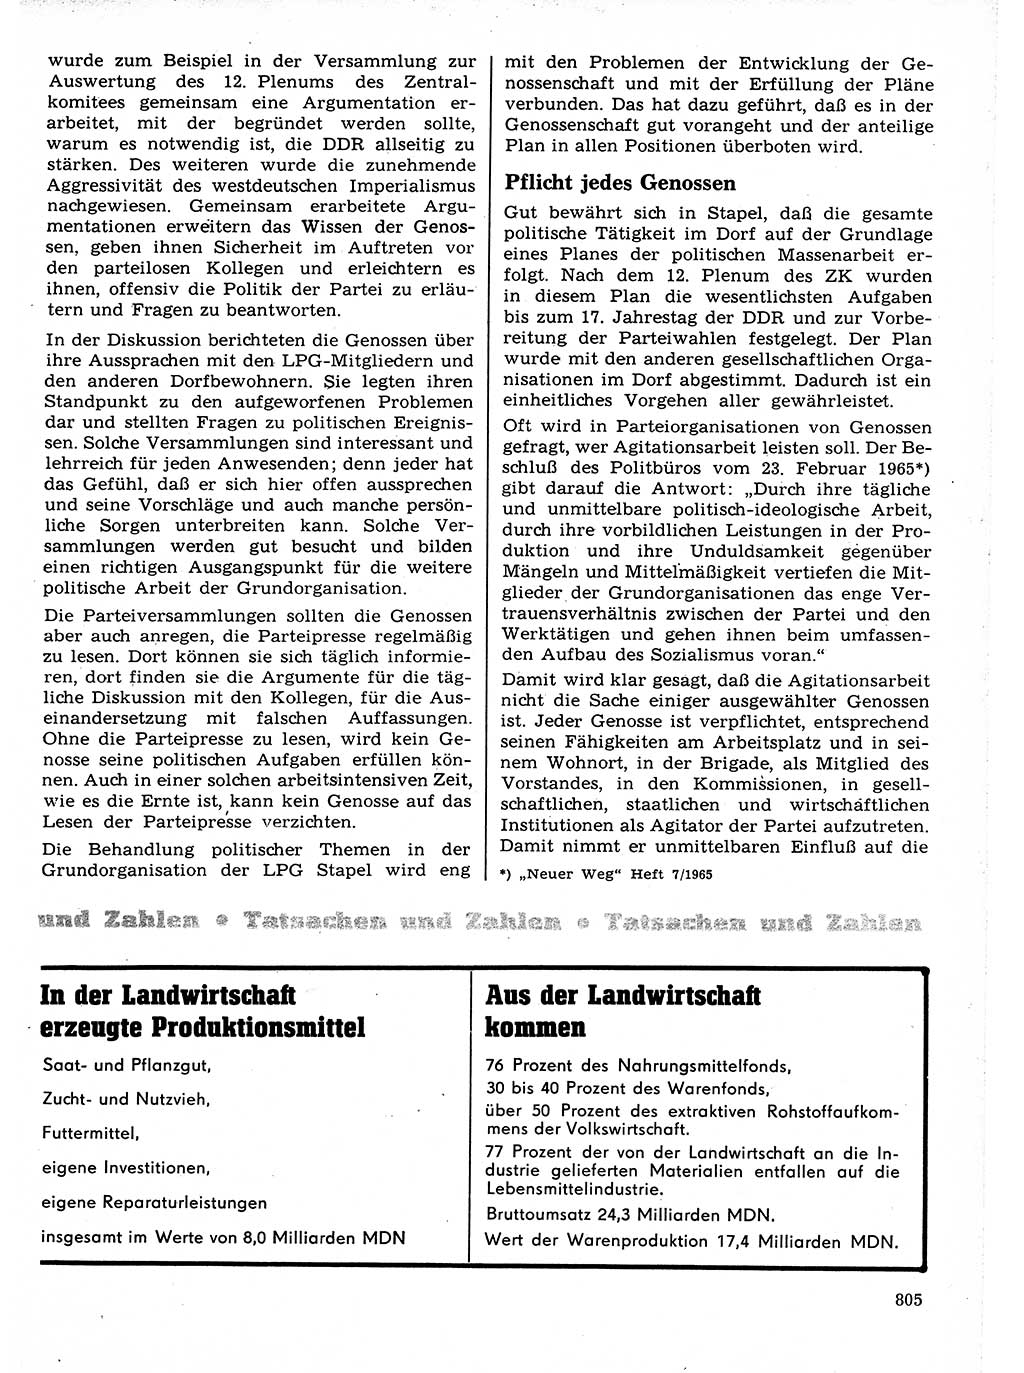 Neuer Weg (NW), Organ des Zentralkomitees (ZK) der SED (Sozialistische Einheitspartei Deutschlands) für Fragen des Parteilebens, 21. Jahrgang [Deutsche Demokratische Republik (DDR)] 1966, Seite 805 (NW ZK SED DDR 1966, S. 805)